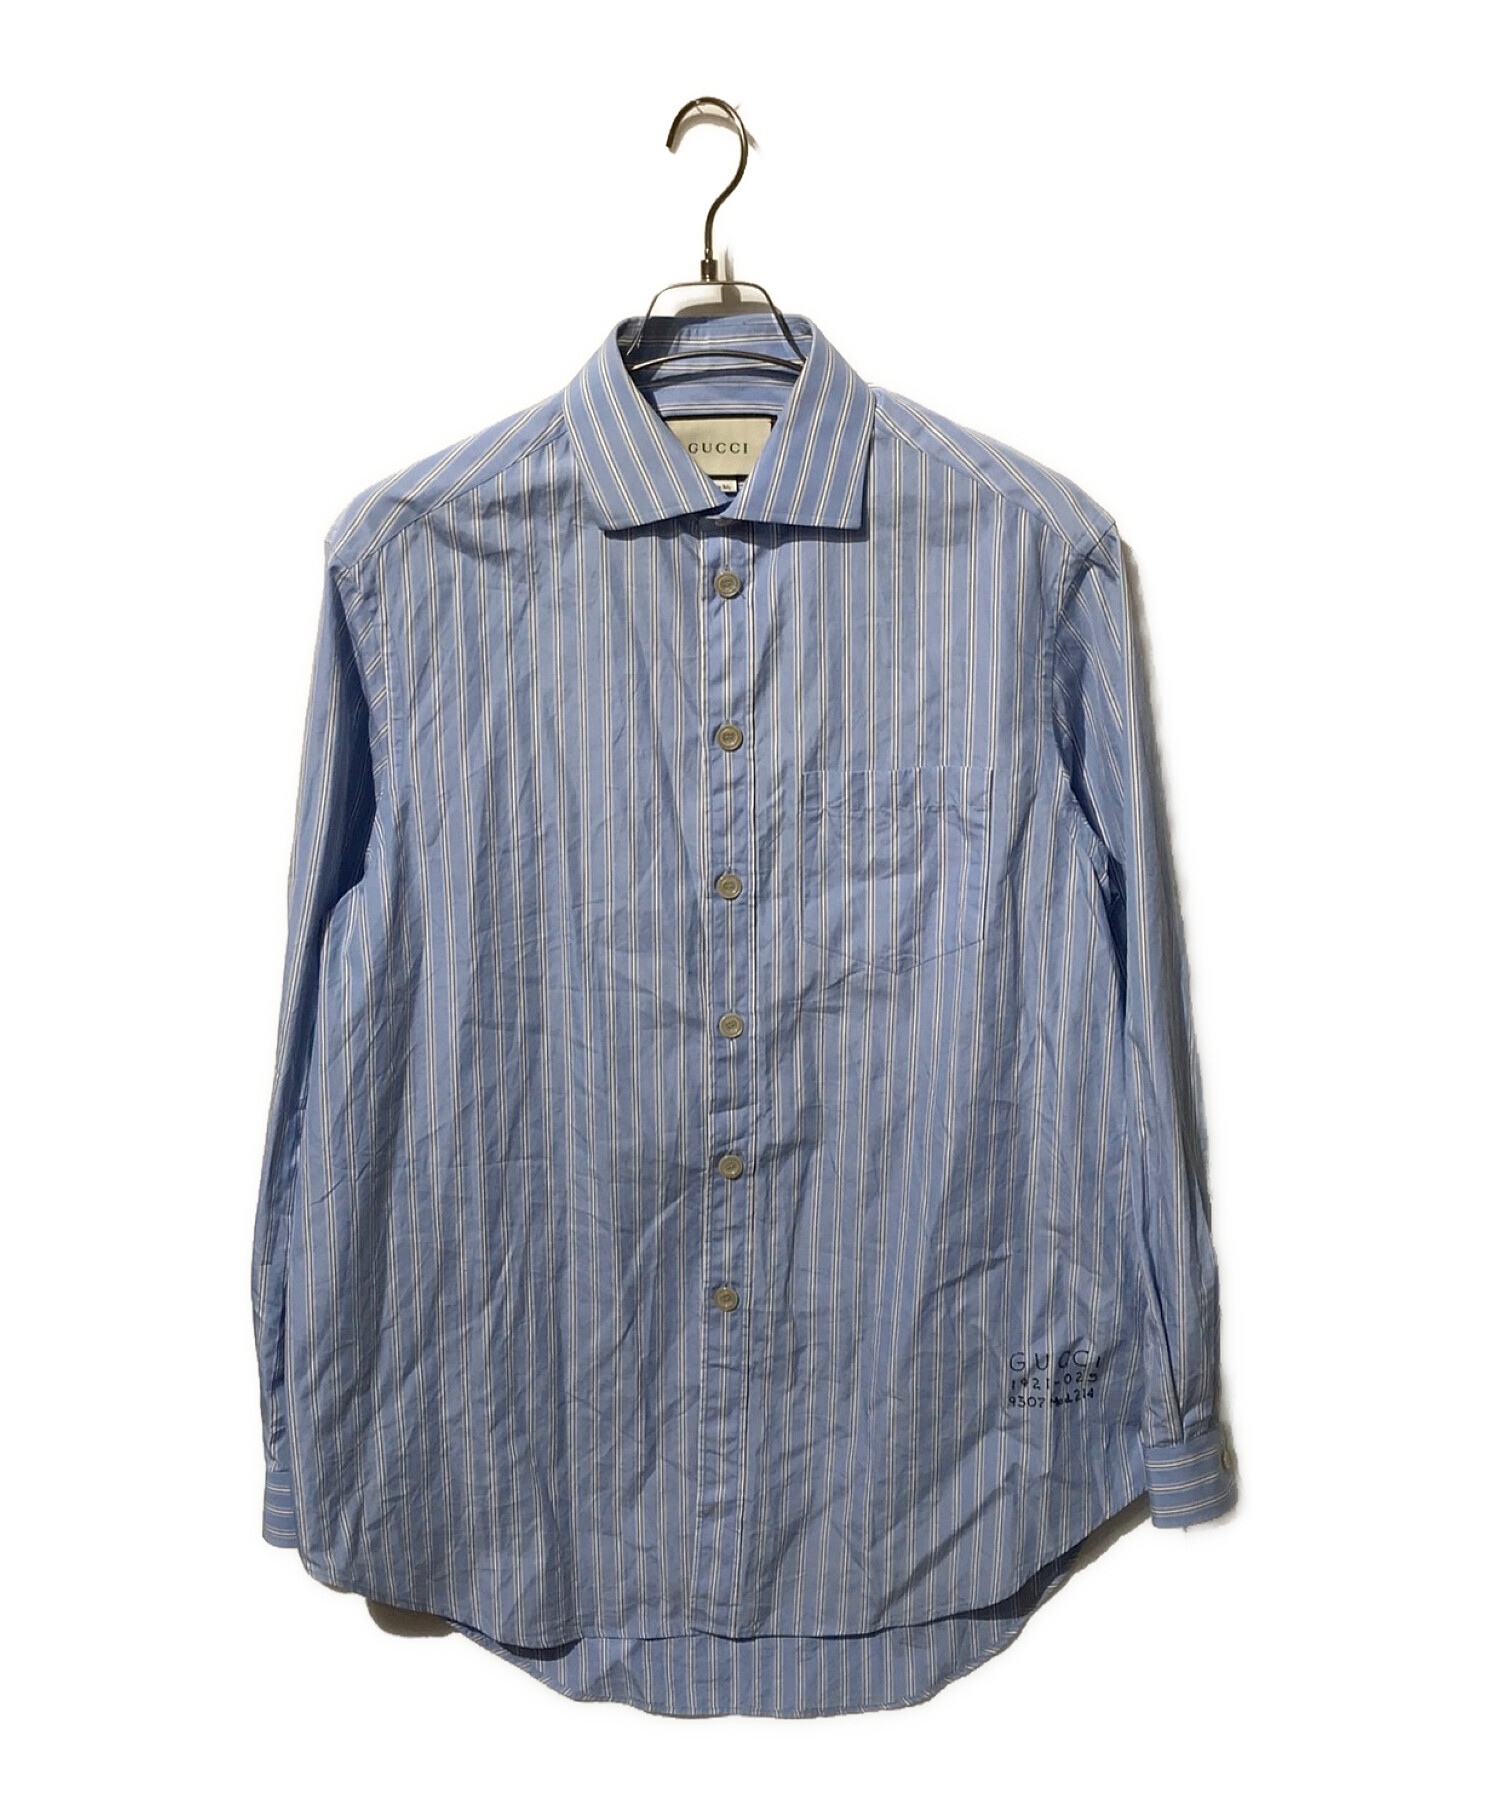 GUCCI (グッチ) ロゴ刺繍ストライプシャツ ブルー サイズ:46